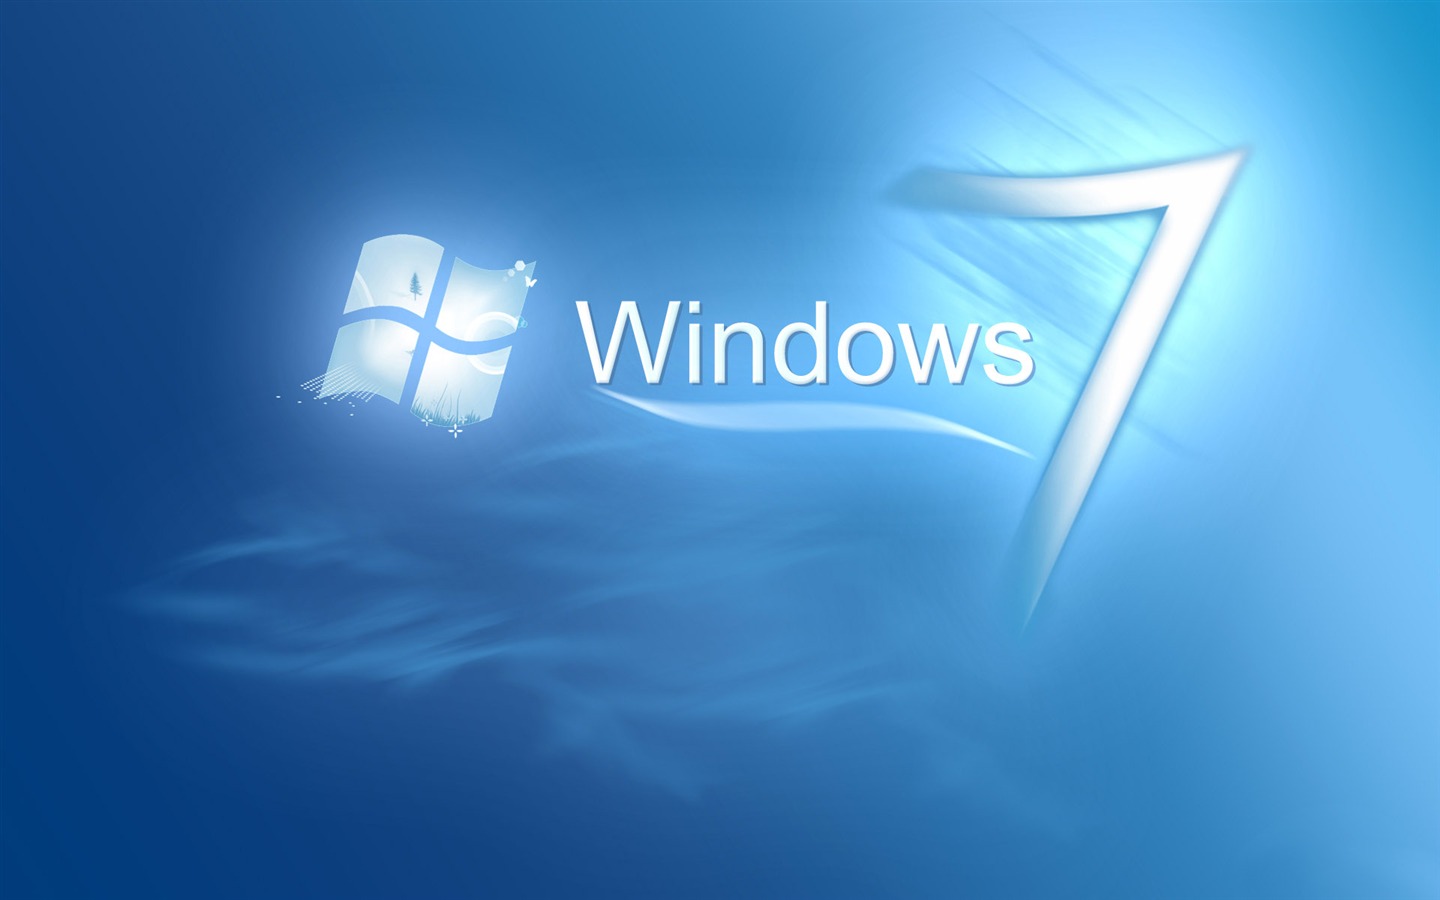 Windows7 theme wallpaper (2) #10 - 1440x900